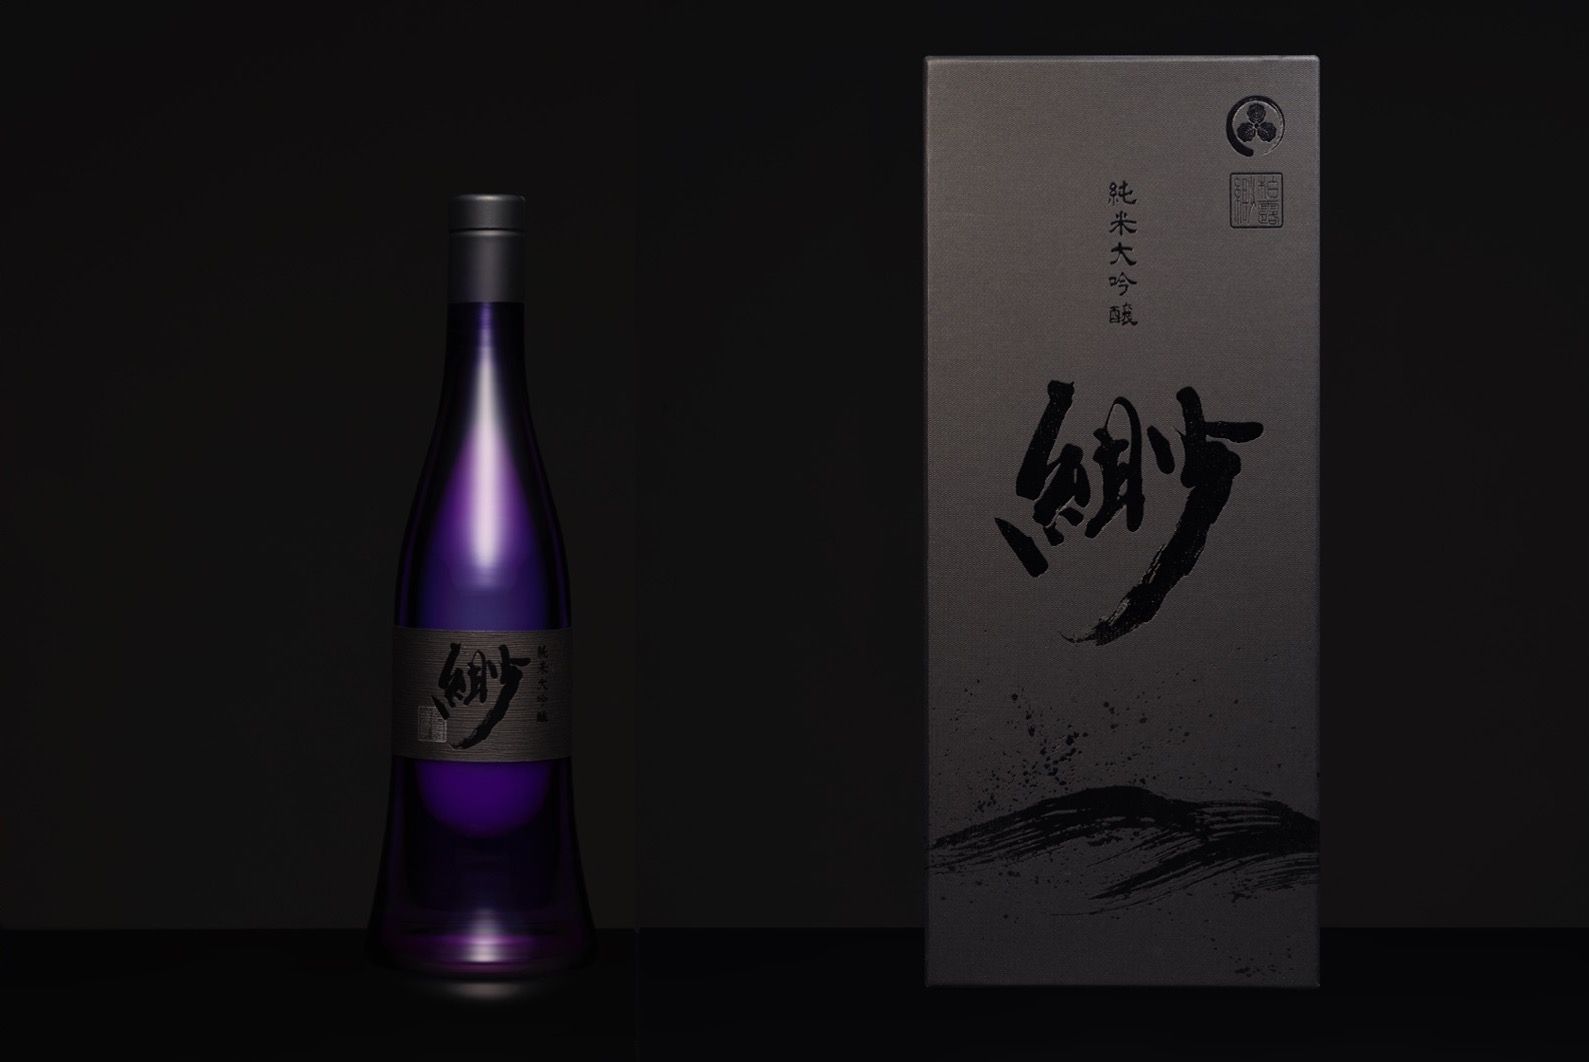 アジア富裕層向け日本酒事業  第一号ブランド「緲(びょう)」 株式会社UNITY ZEROが柏露酒造と連携し海外提供開始